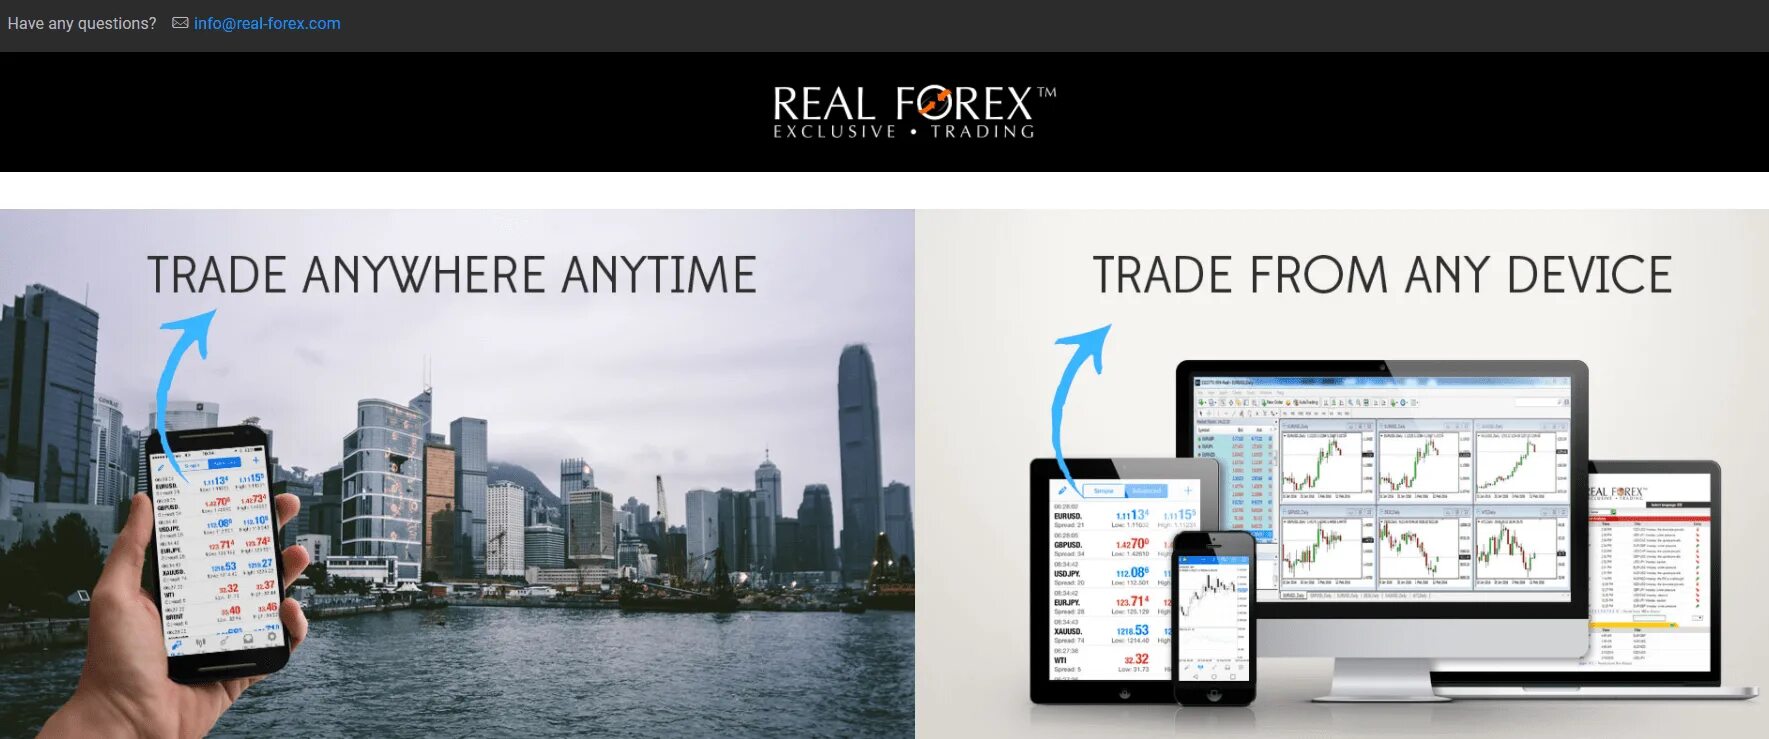 Валютном отзывы. Форекс отзывы реальных людей. Брокер forex отзывы. Торговля на форекс отзывы. Торговля на форекс отзывы форум.